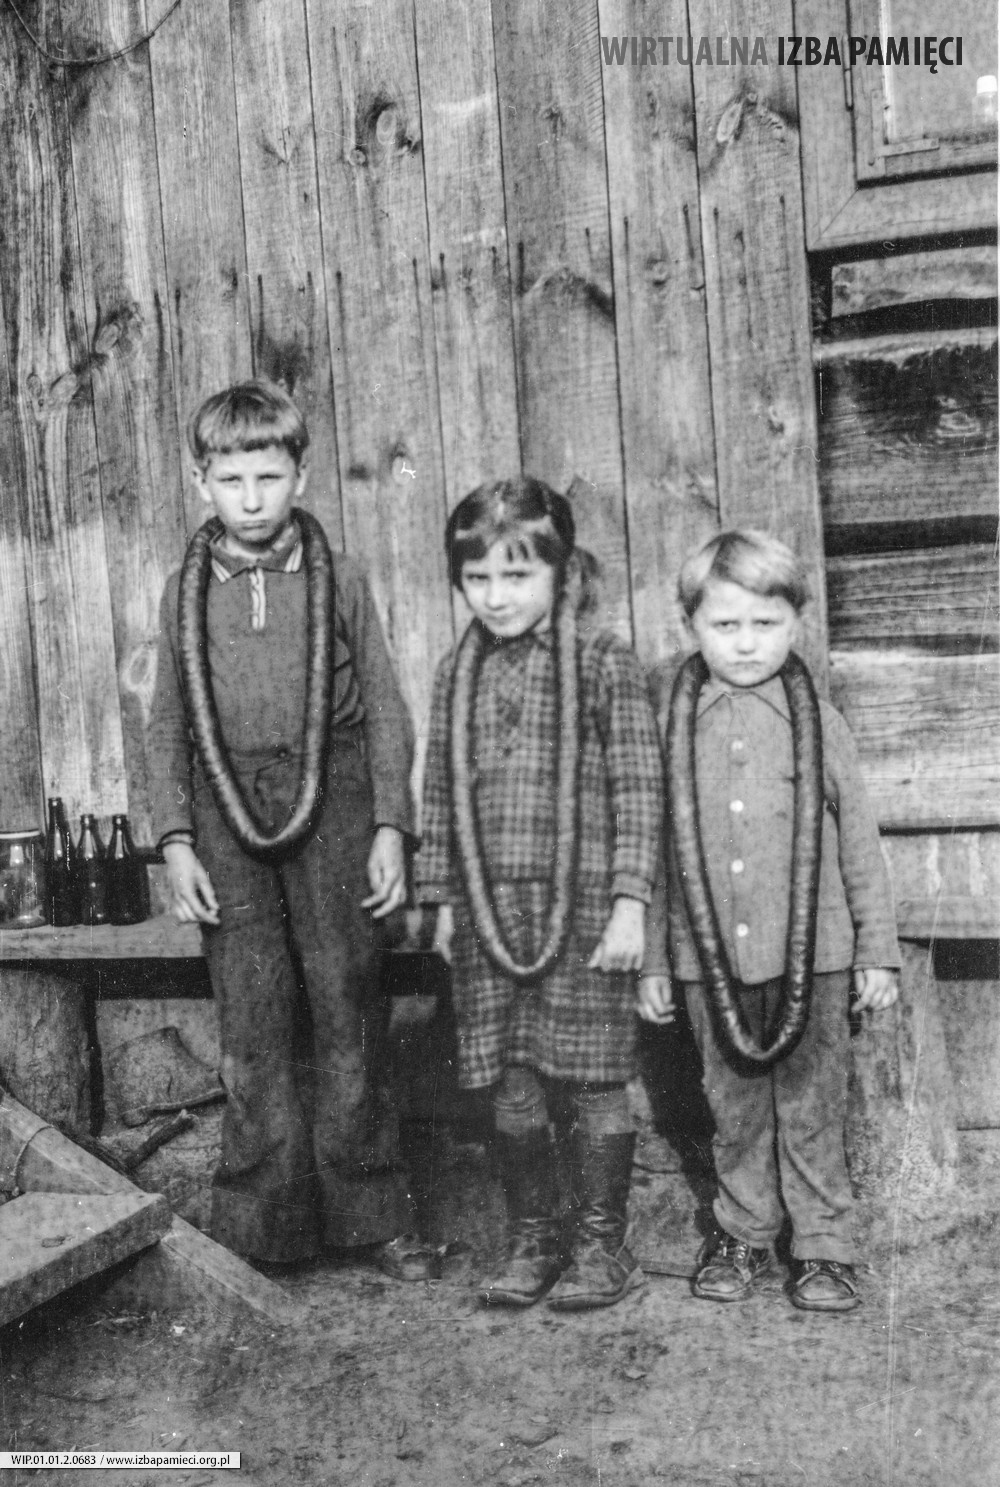 Lata 70. XX wieku. Dzieci Franciszka Hubacza z Mołodycza z kiełbasami na szyi